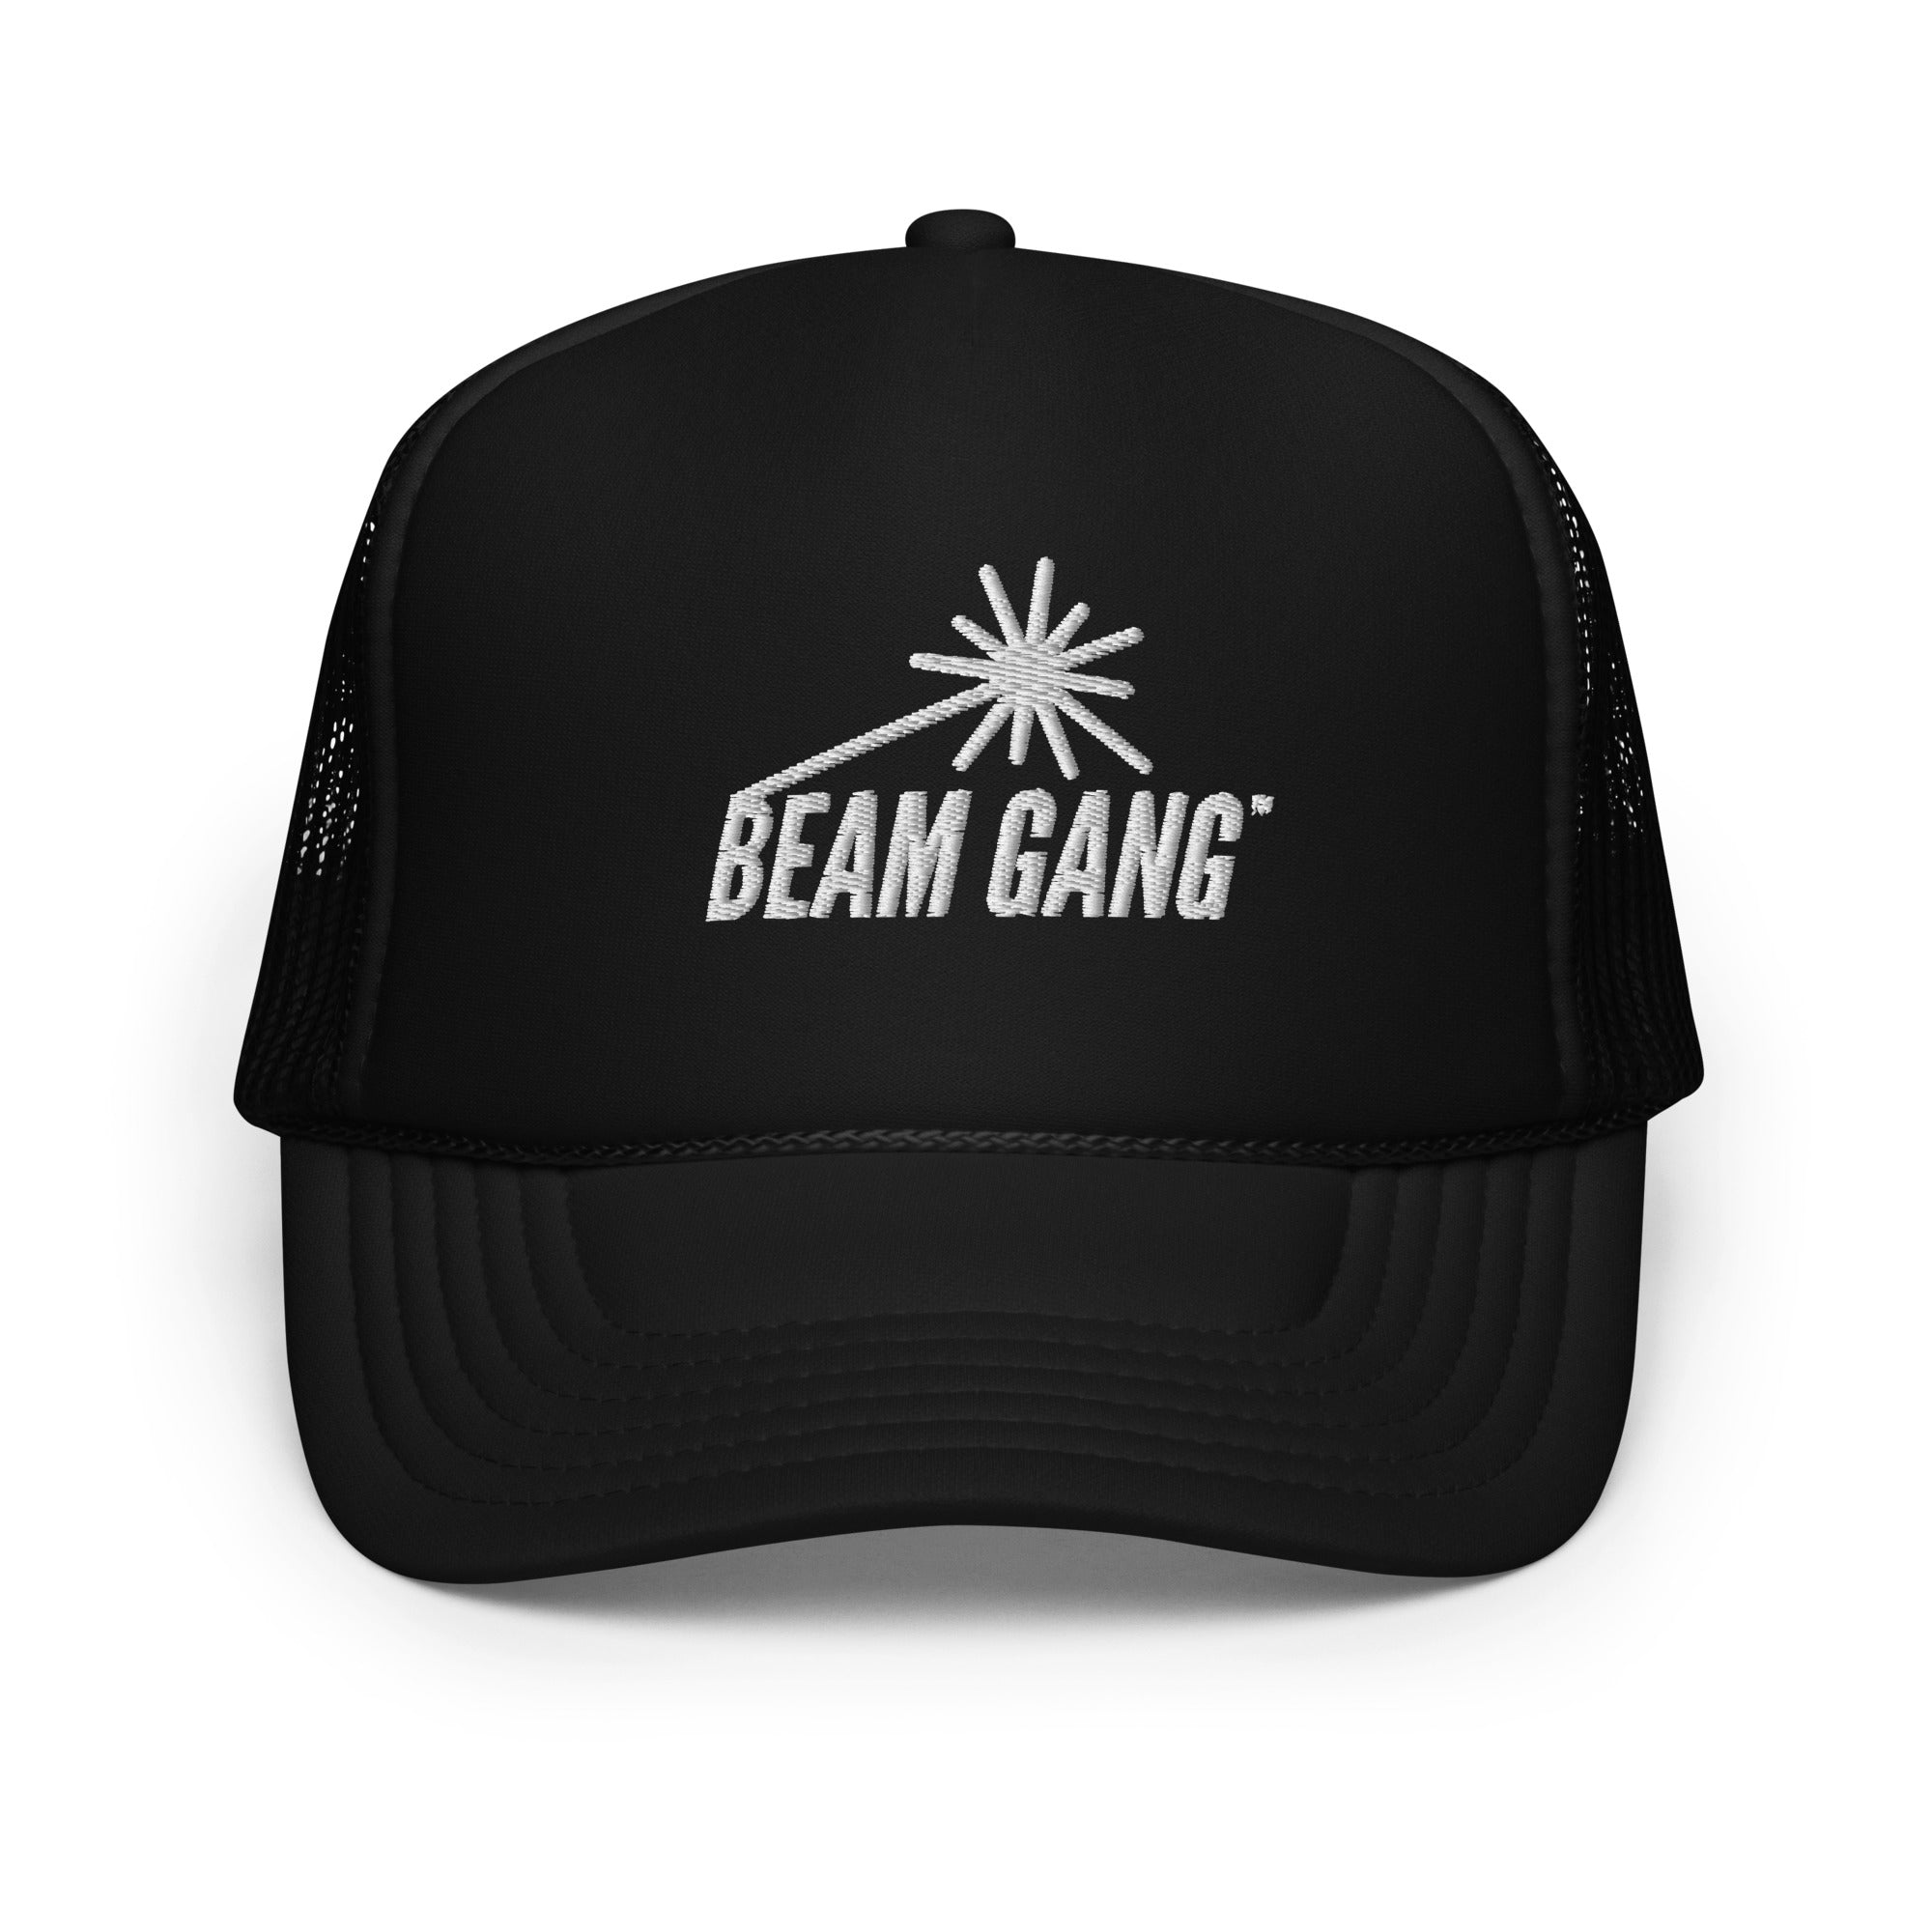 Beam Gang Foam trucker hat